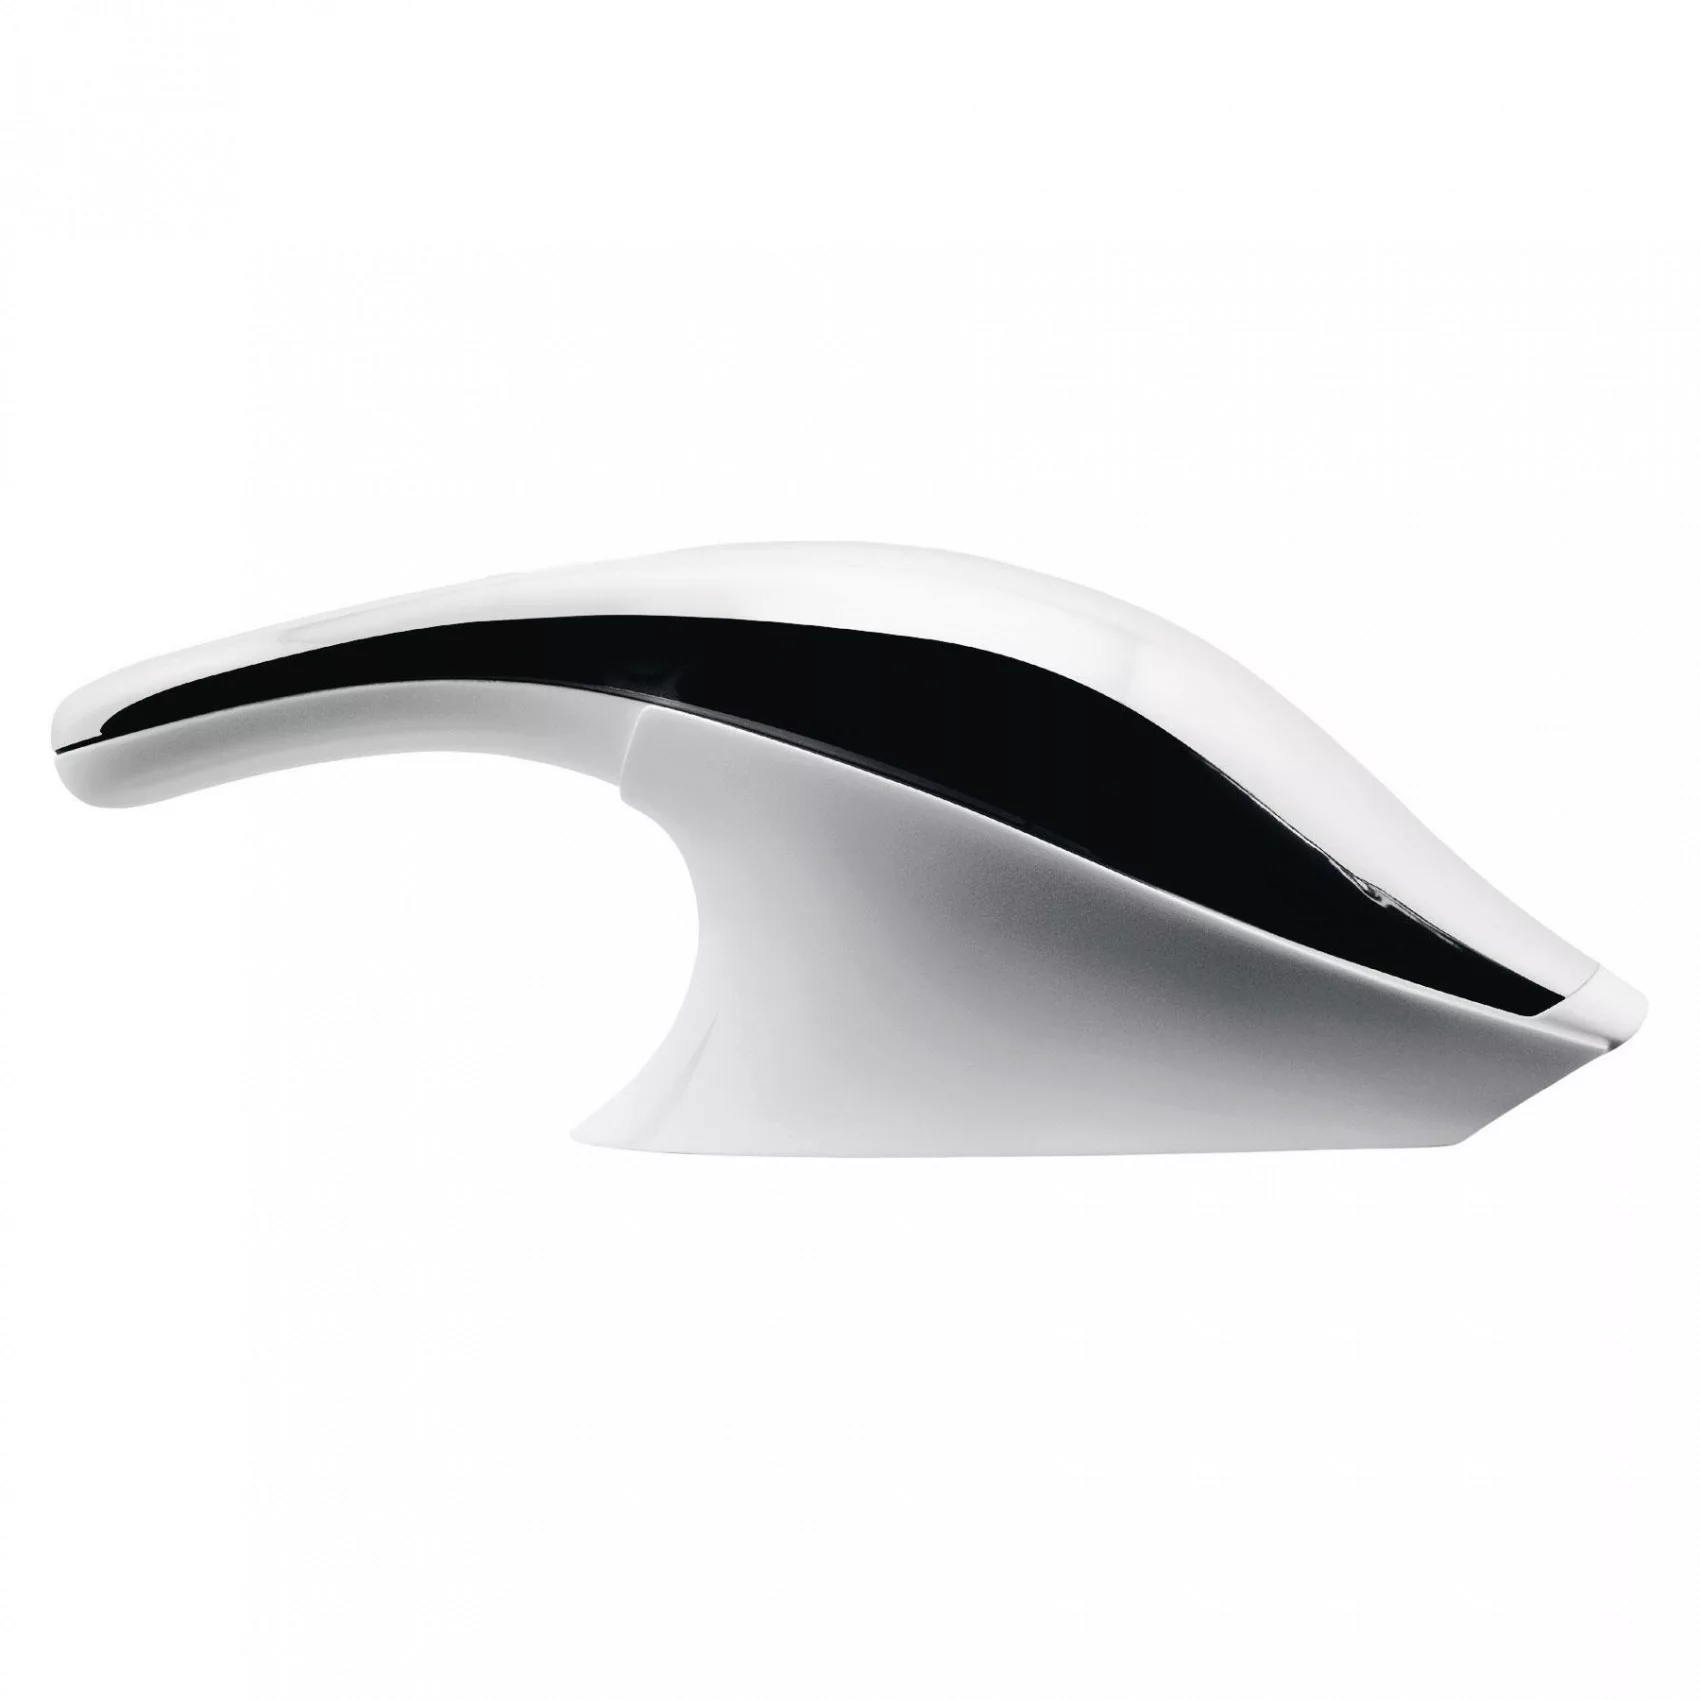 Alessi - SG67 W Tischstaubsauger - weiß, edelstahl/glänzend poliert/LxBxH 3 günstig online kaufen